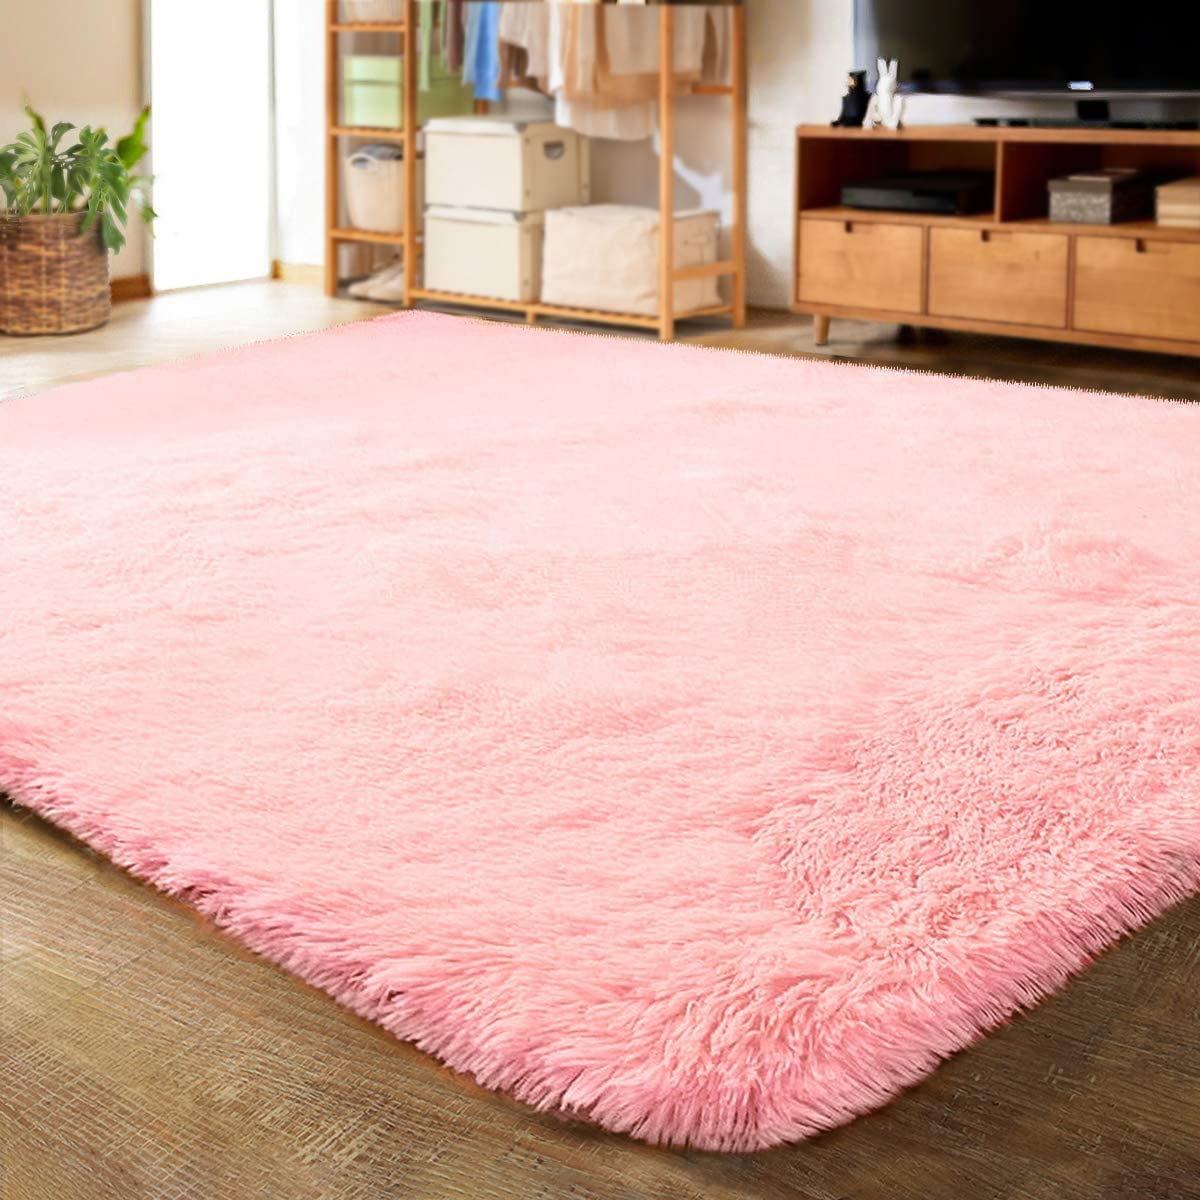 Kids Pink Rug Baby Nursery Playroom Mat Childrens Animal Bedroom Floor Carpets 